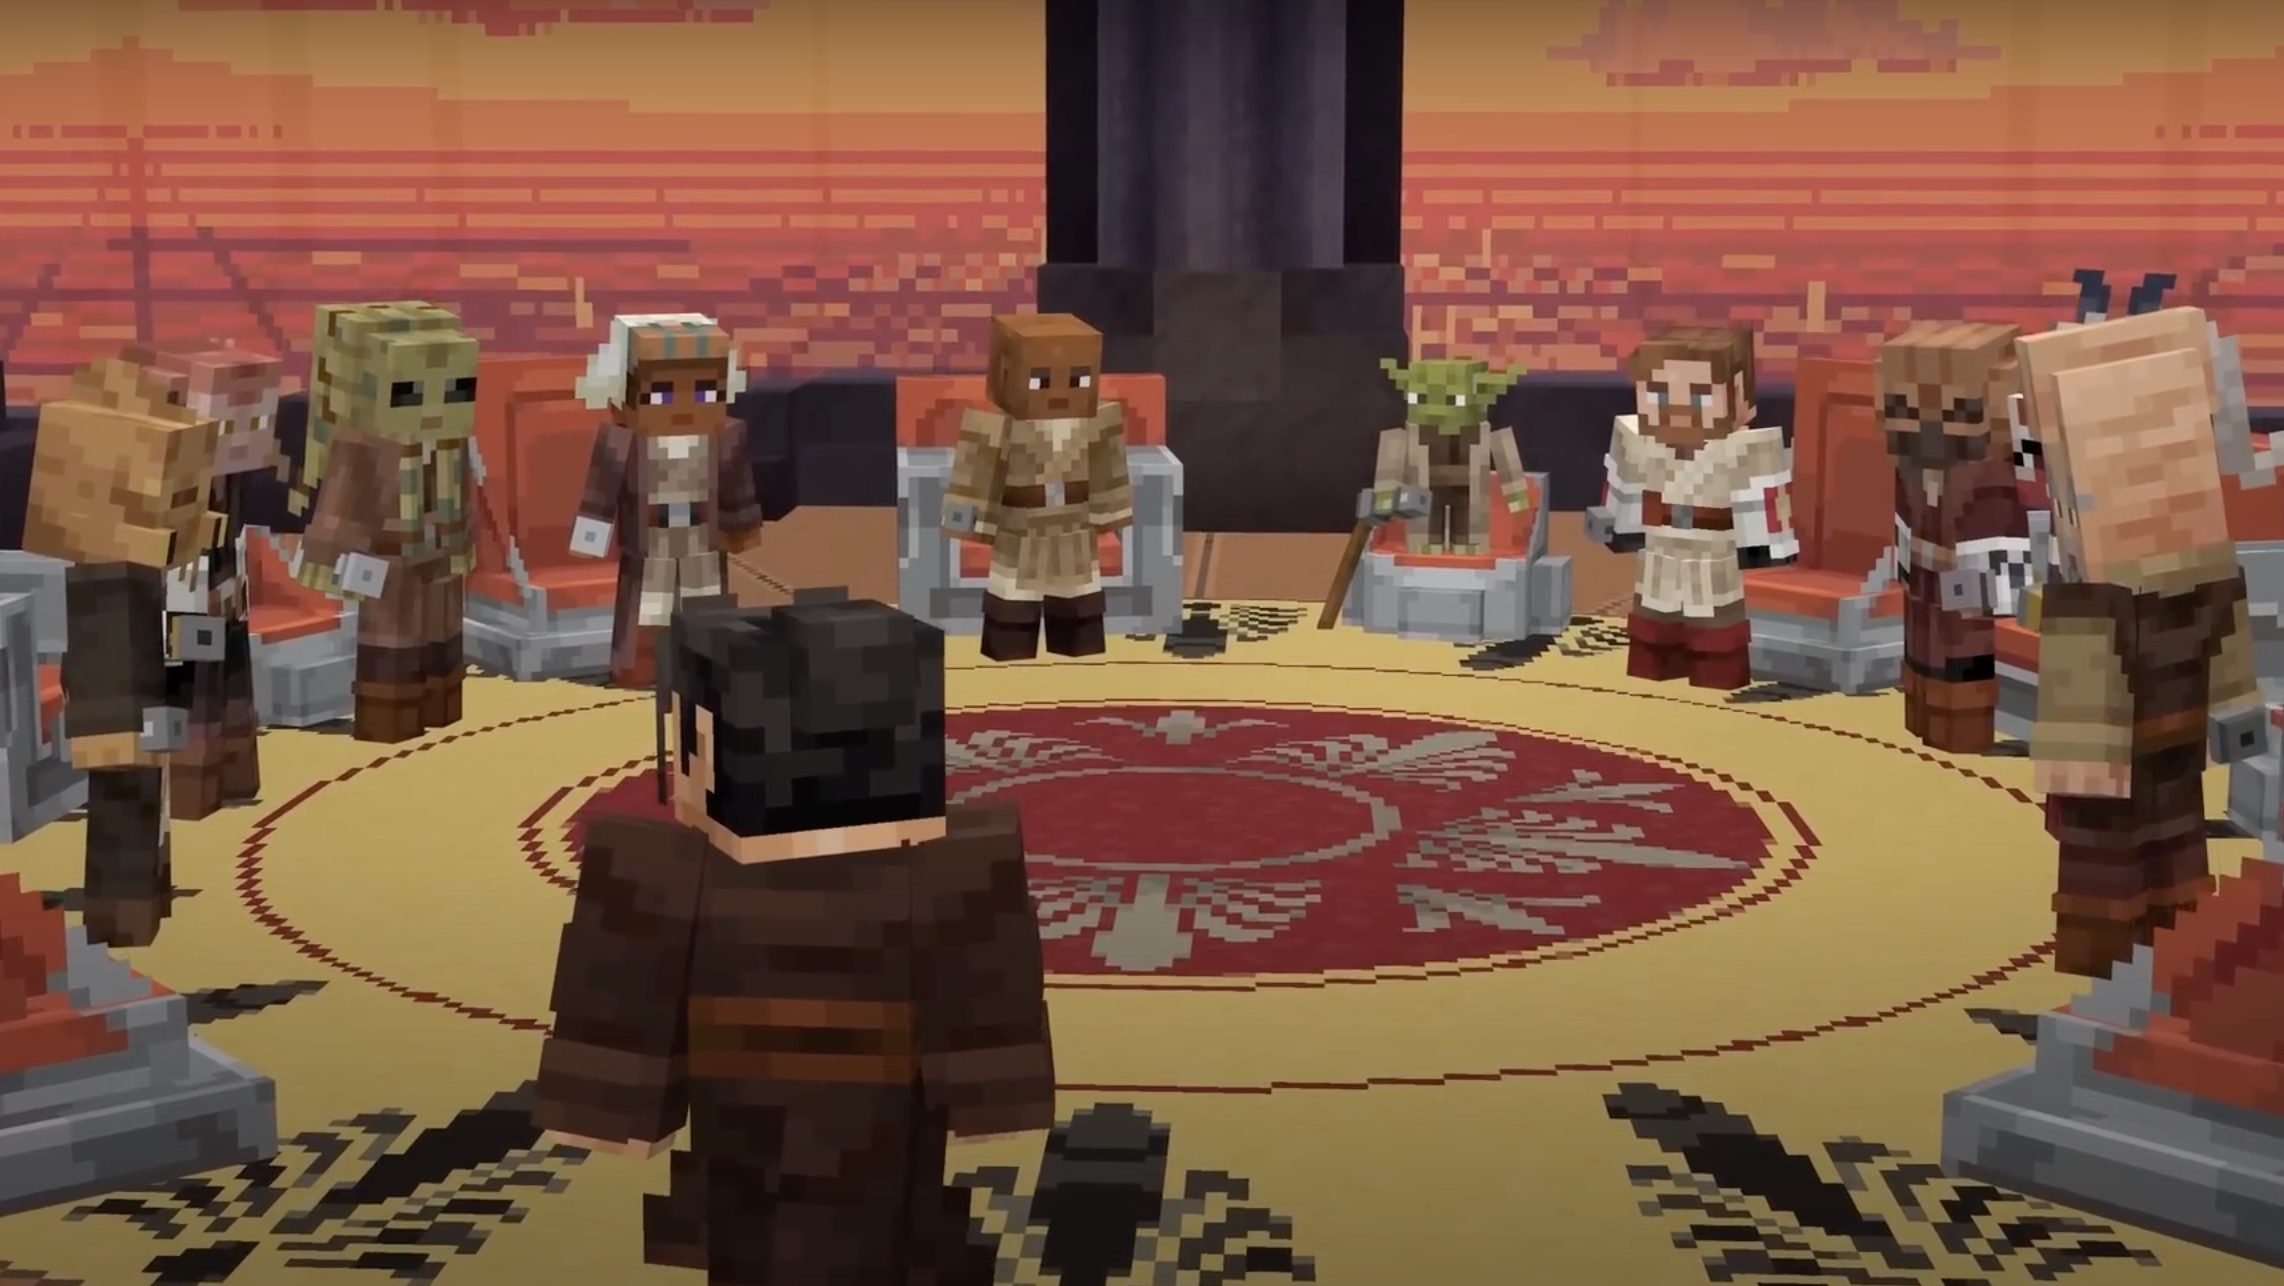 Original Minecraft Trailer Remade in 2020